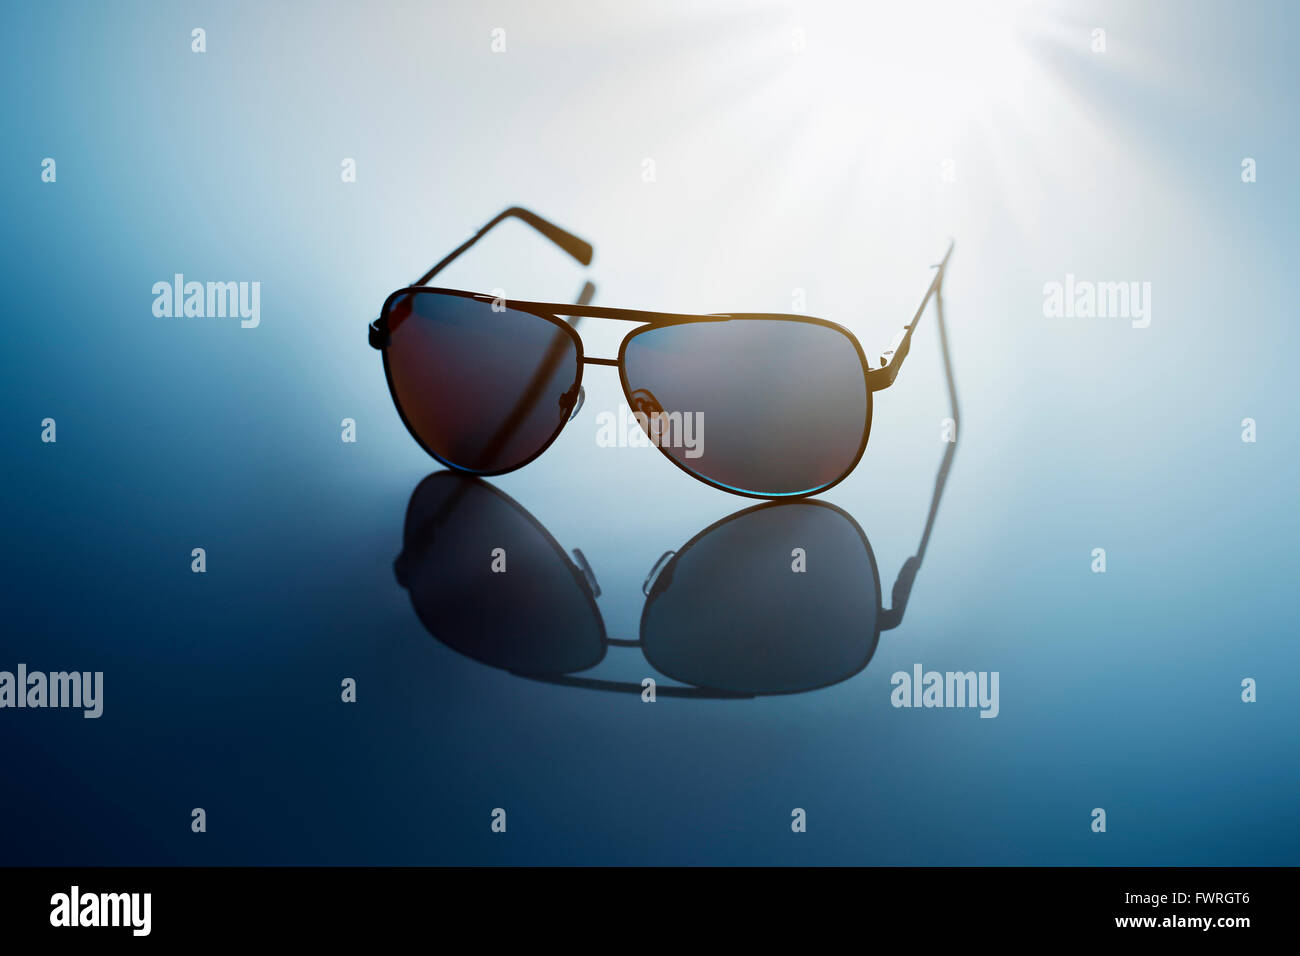 Sonnenbrille auf blauem reflektierenden Hintergrund. Stockfoto